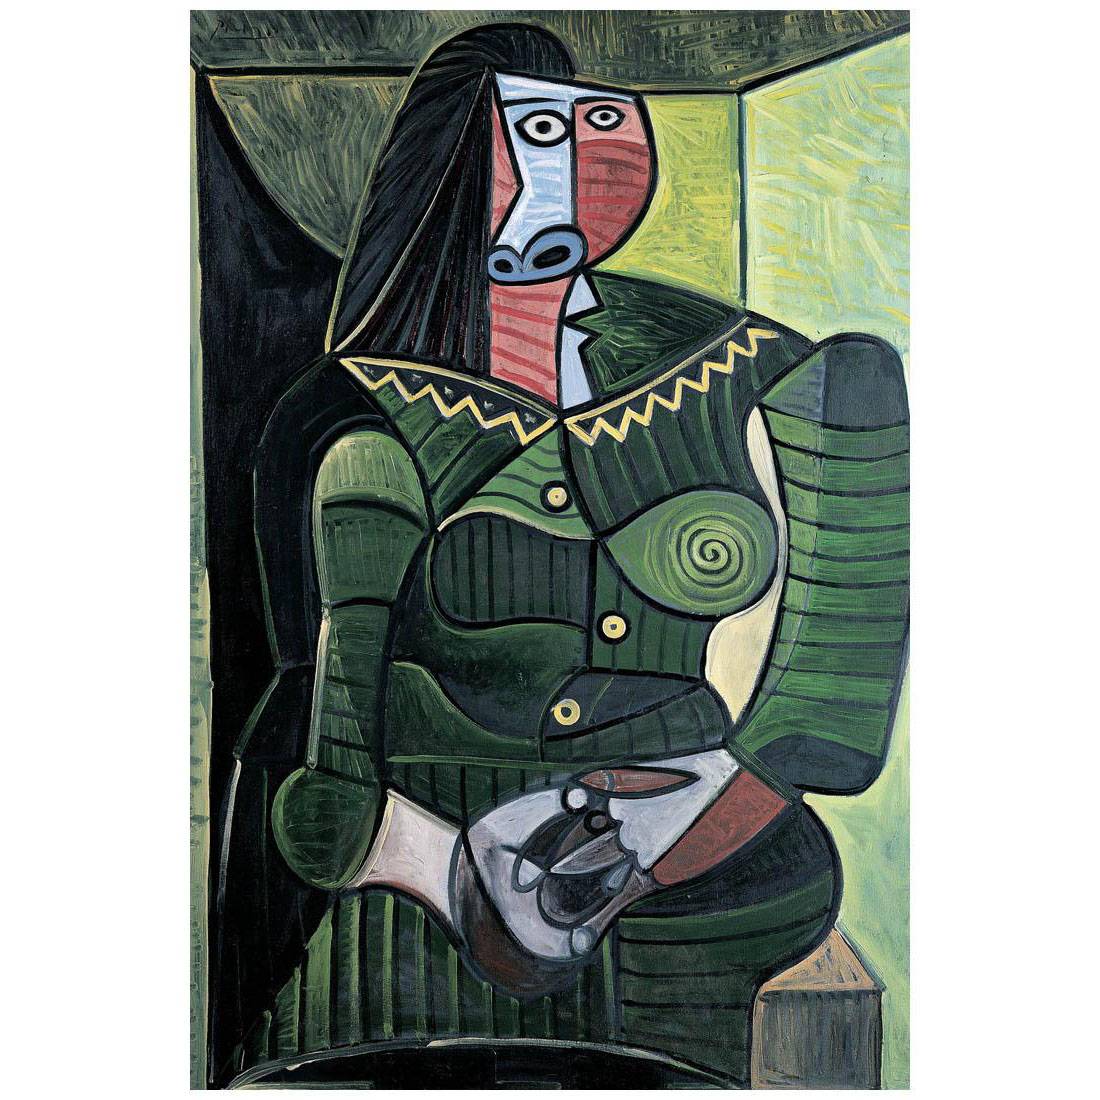 Pablo Picasso. Femme en vert. Dora. 1944. Foundation Beyeler, Basel